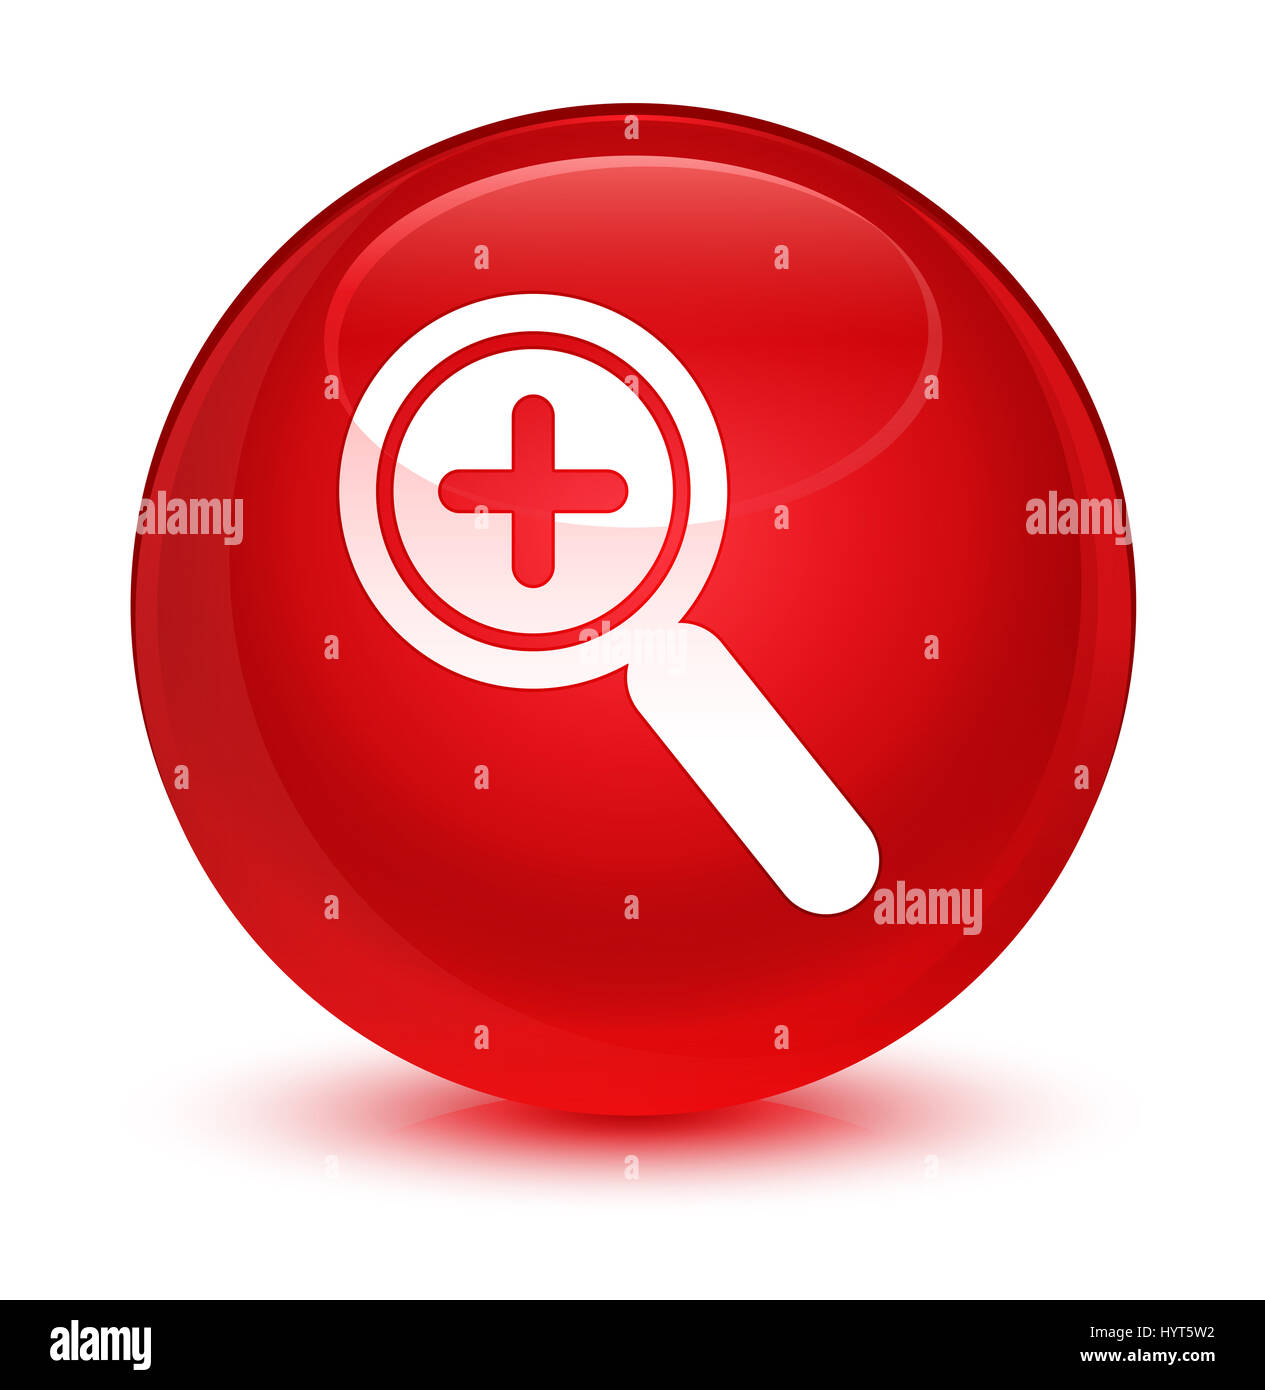 Dans l'icône Zoom isolé sur le bouton rond rouge vitreux abstract illustration Banque D'Images